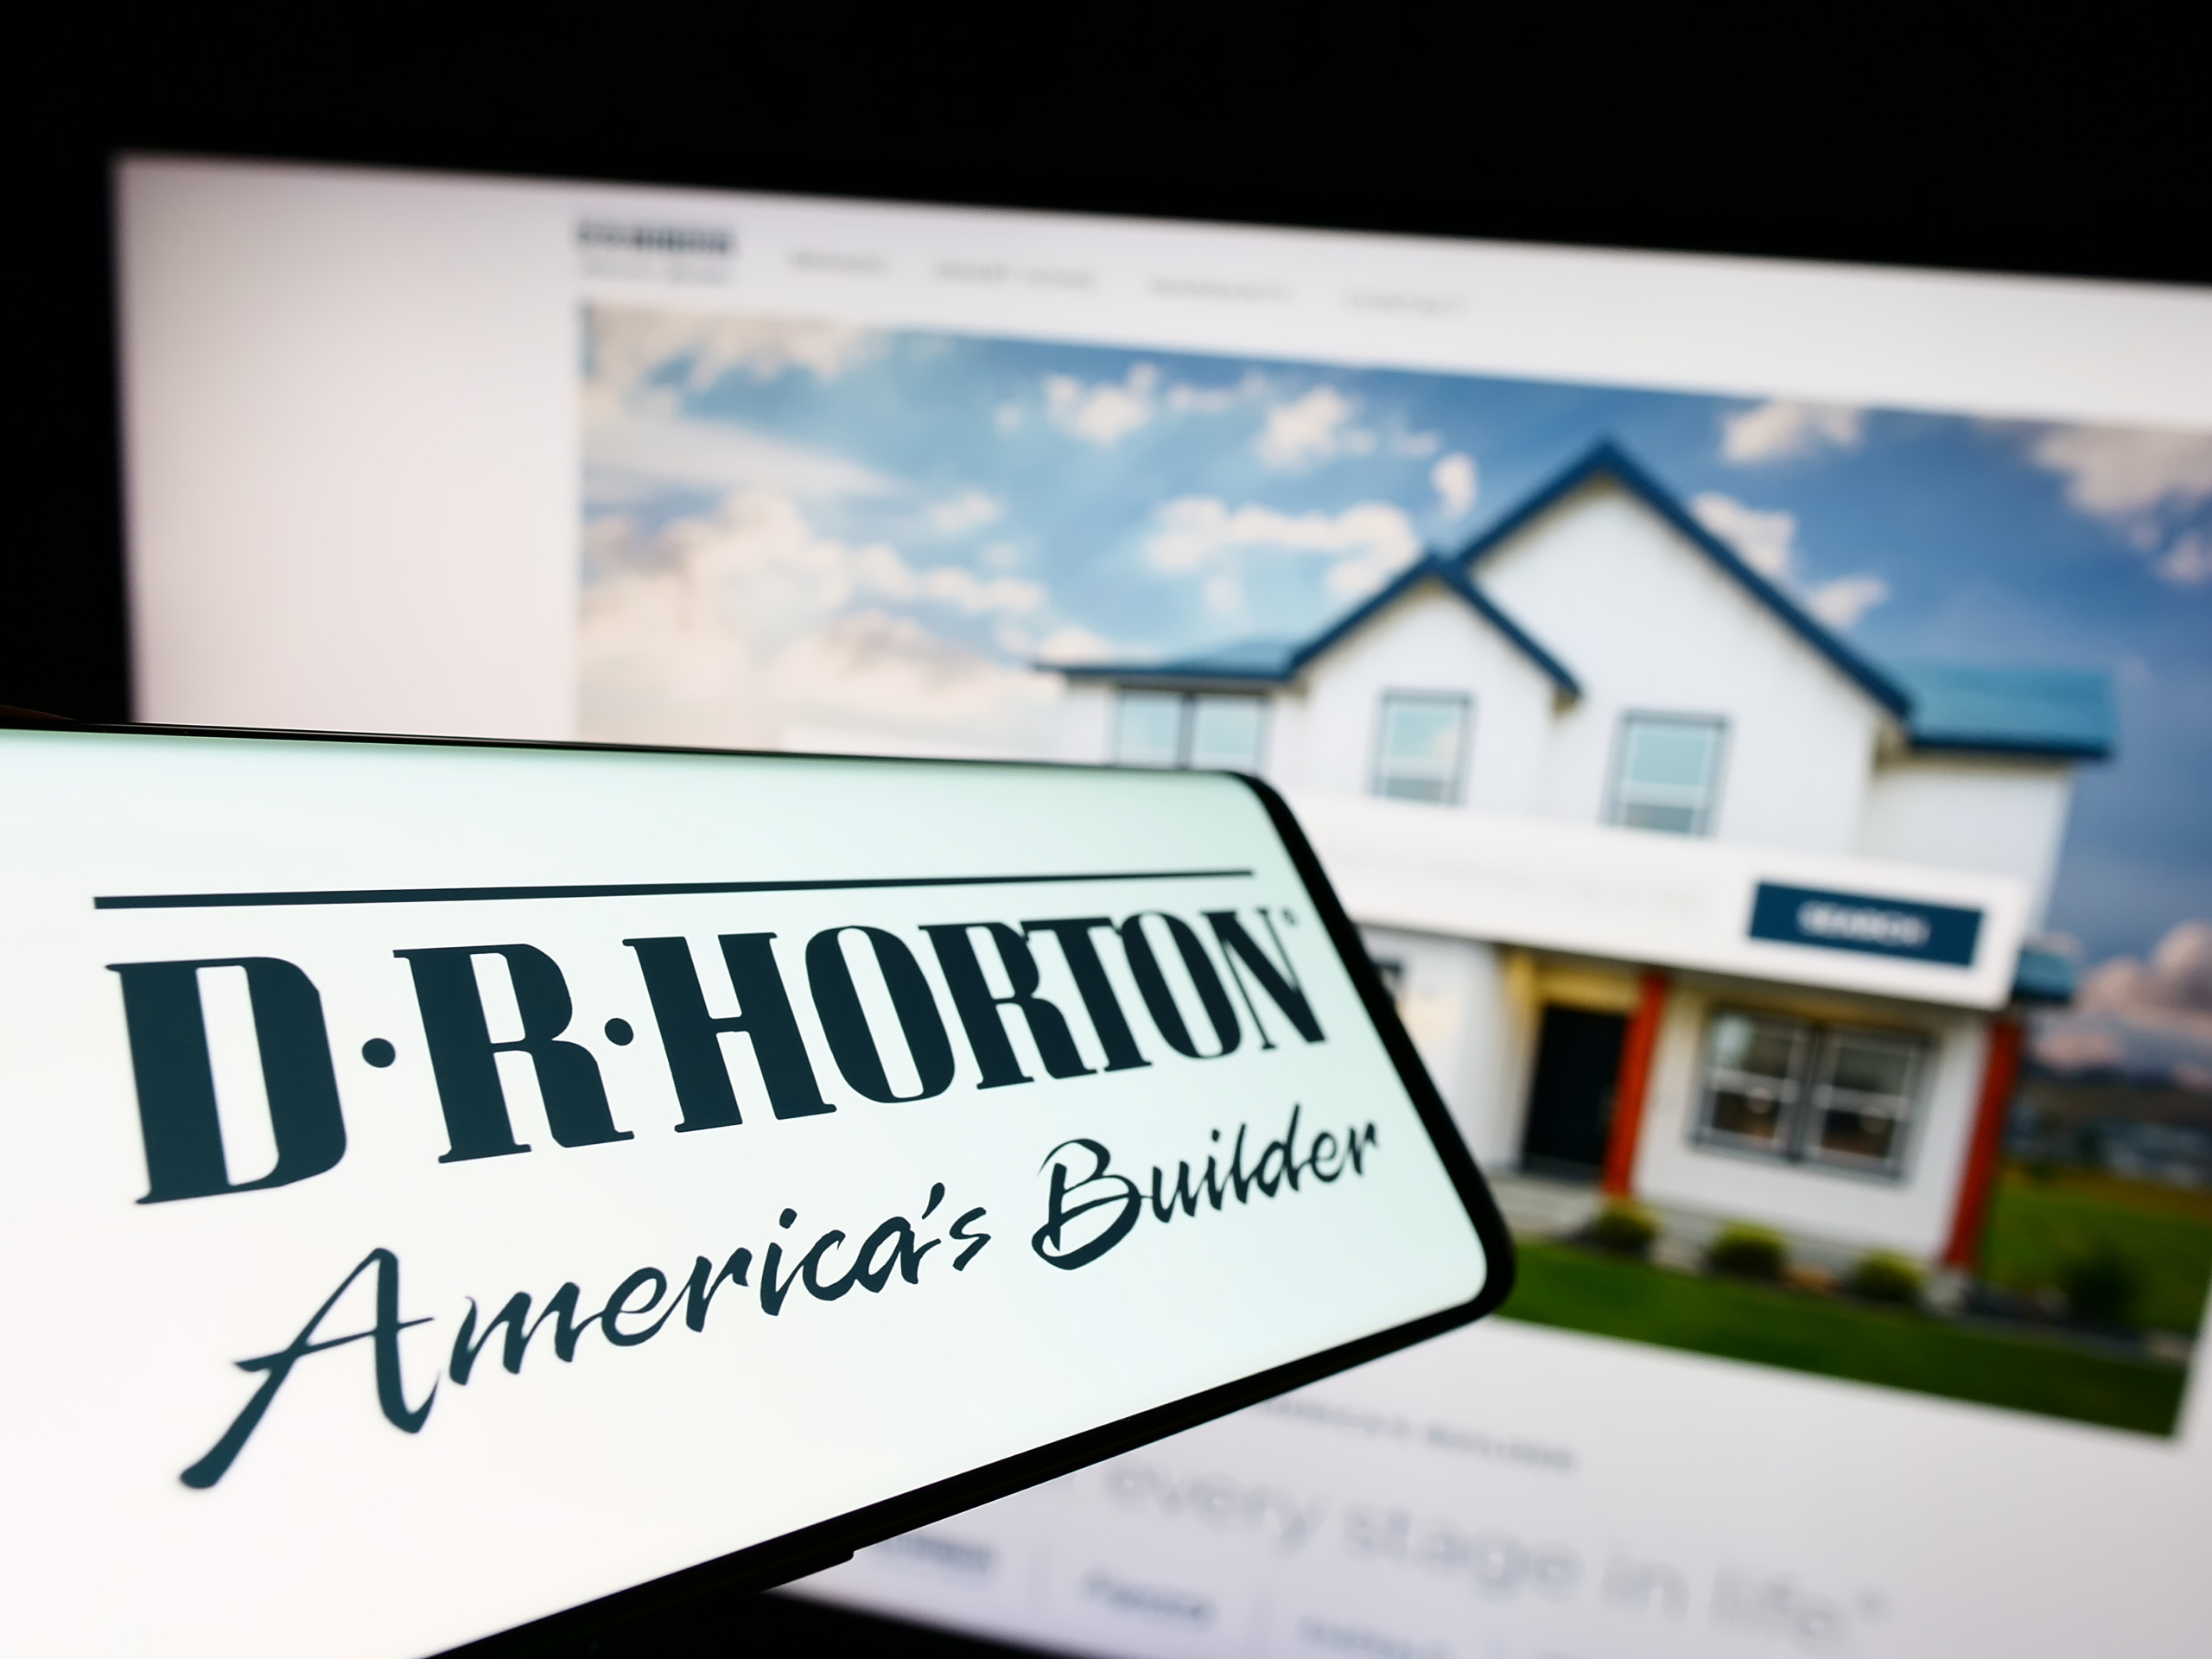 D. R. Horton übertrifft Analystenprognosen deutlich - Ist die US-Hausbaurezession vorbei?